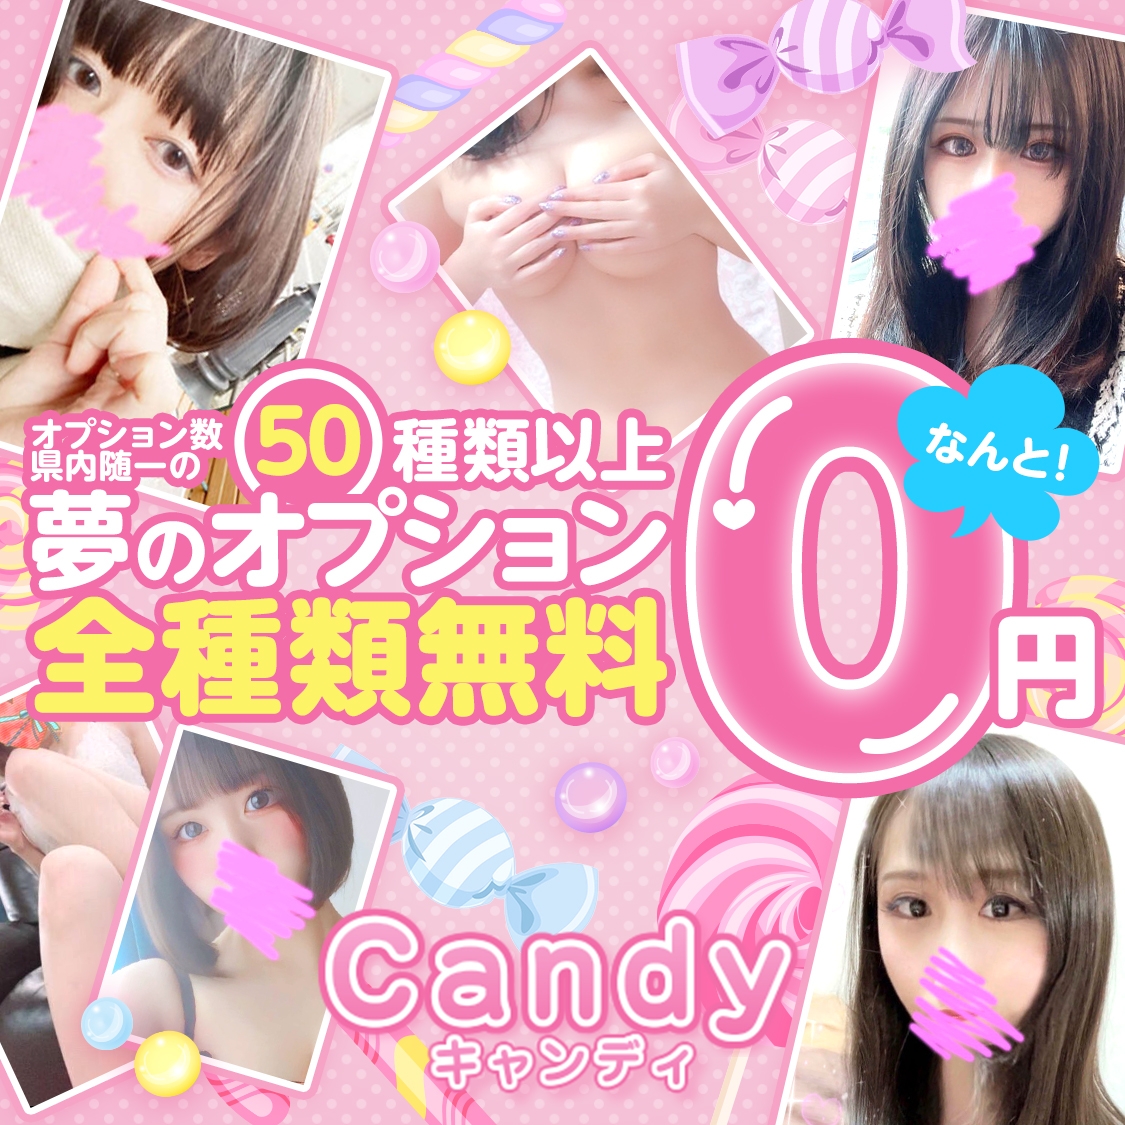 Candy(キャンディ)